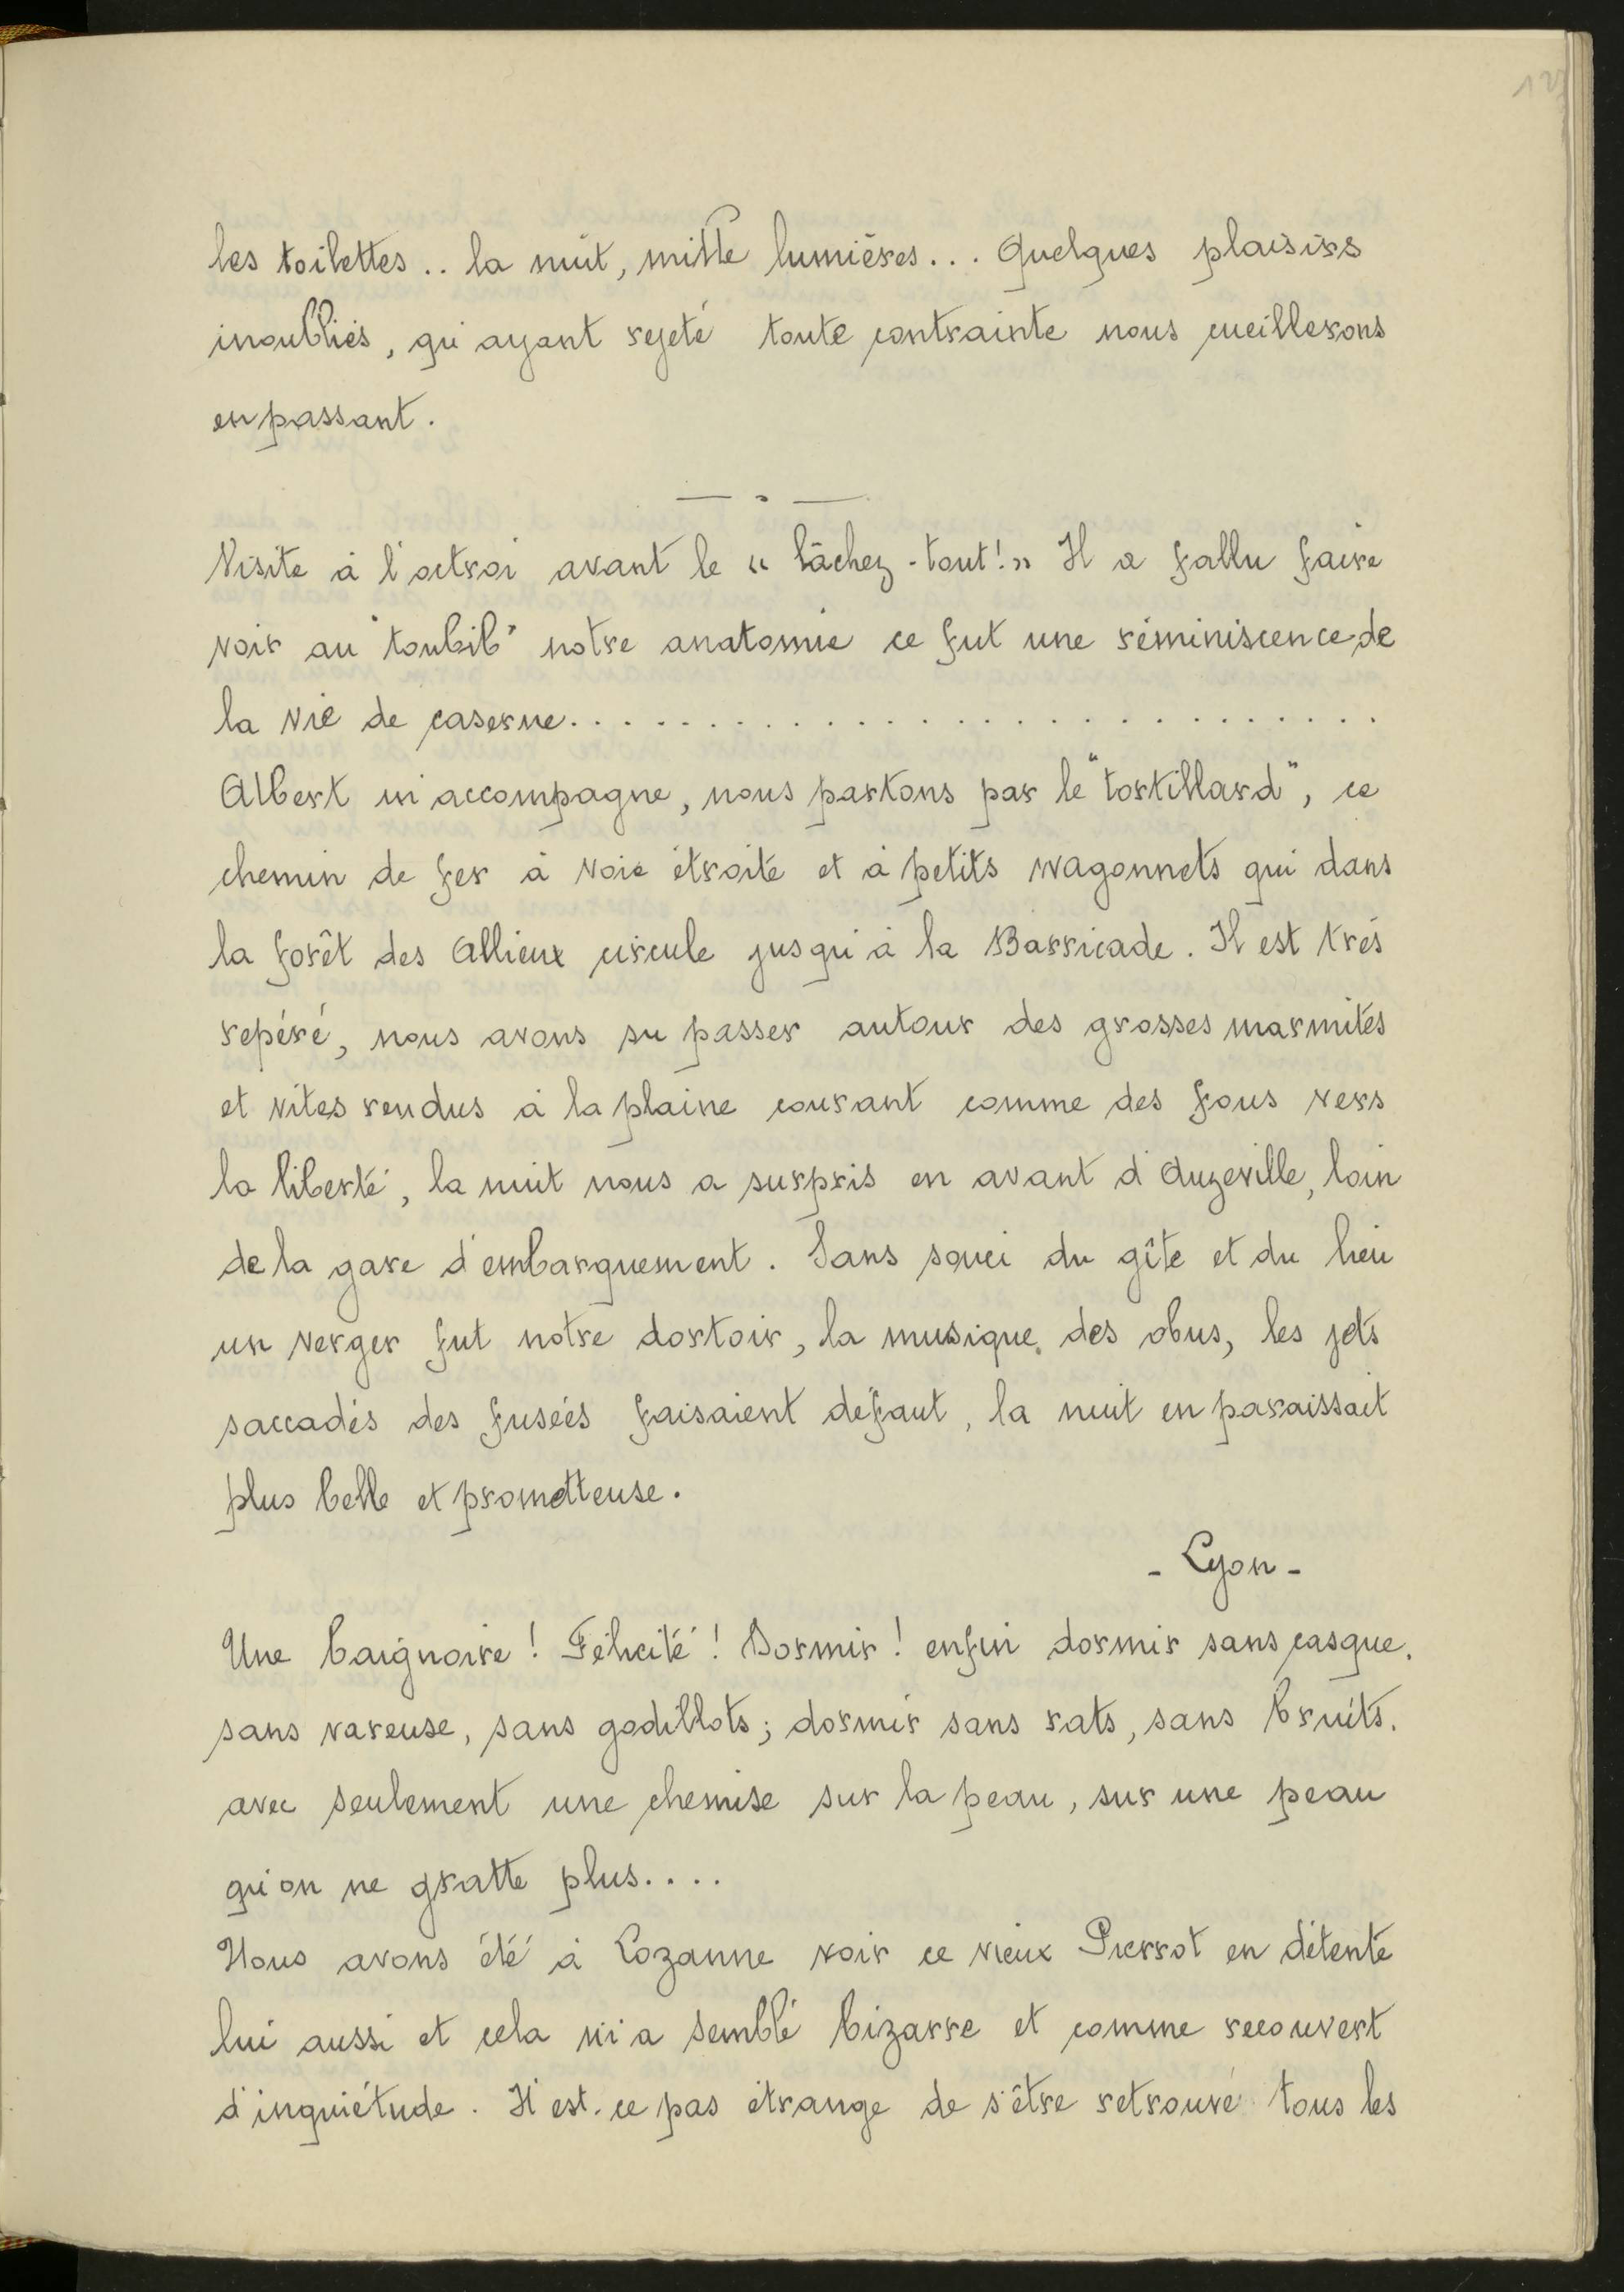 Journal du soldat Rossignol, 25 juillet 1917 - 1II/593